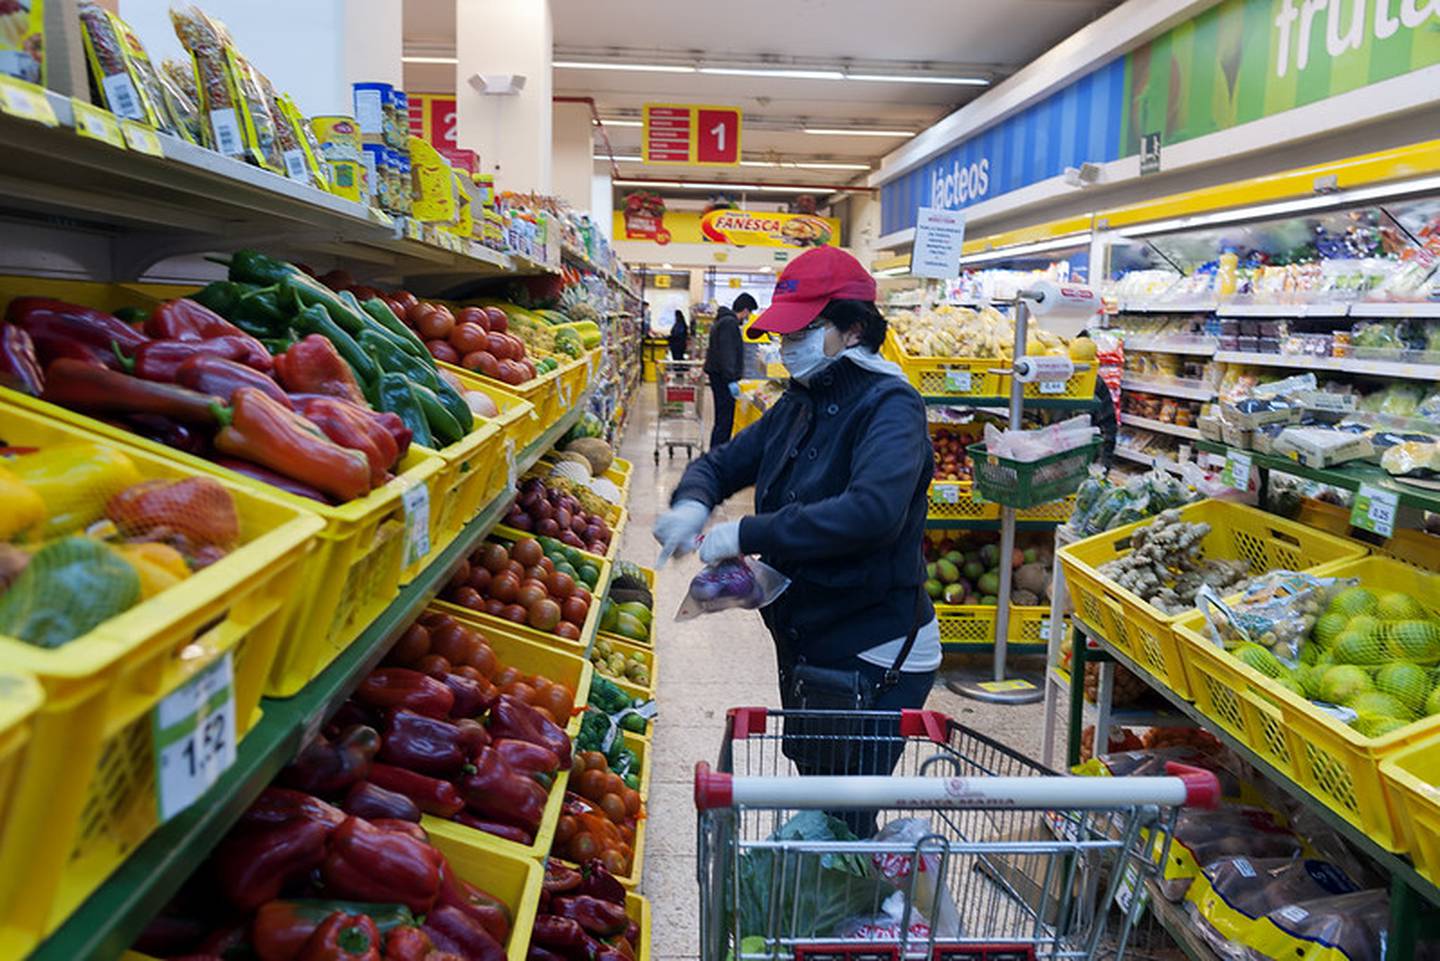 Los latinoamericanos han sentido el alza en los precios de los alimentos, a medida que la inflación se convierte en uno de los principales retos económicos. Fotógrafo: Paul Salazar/Banco Mundial.dfd